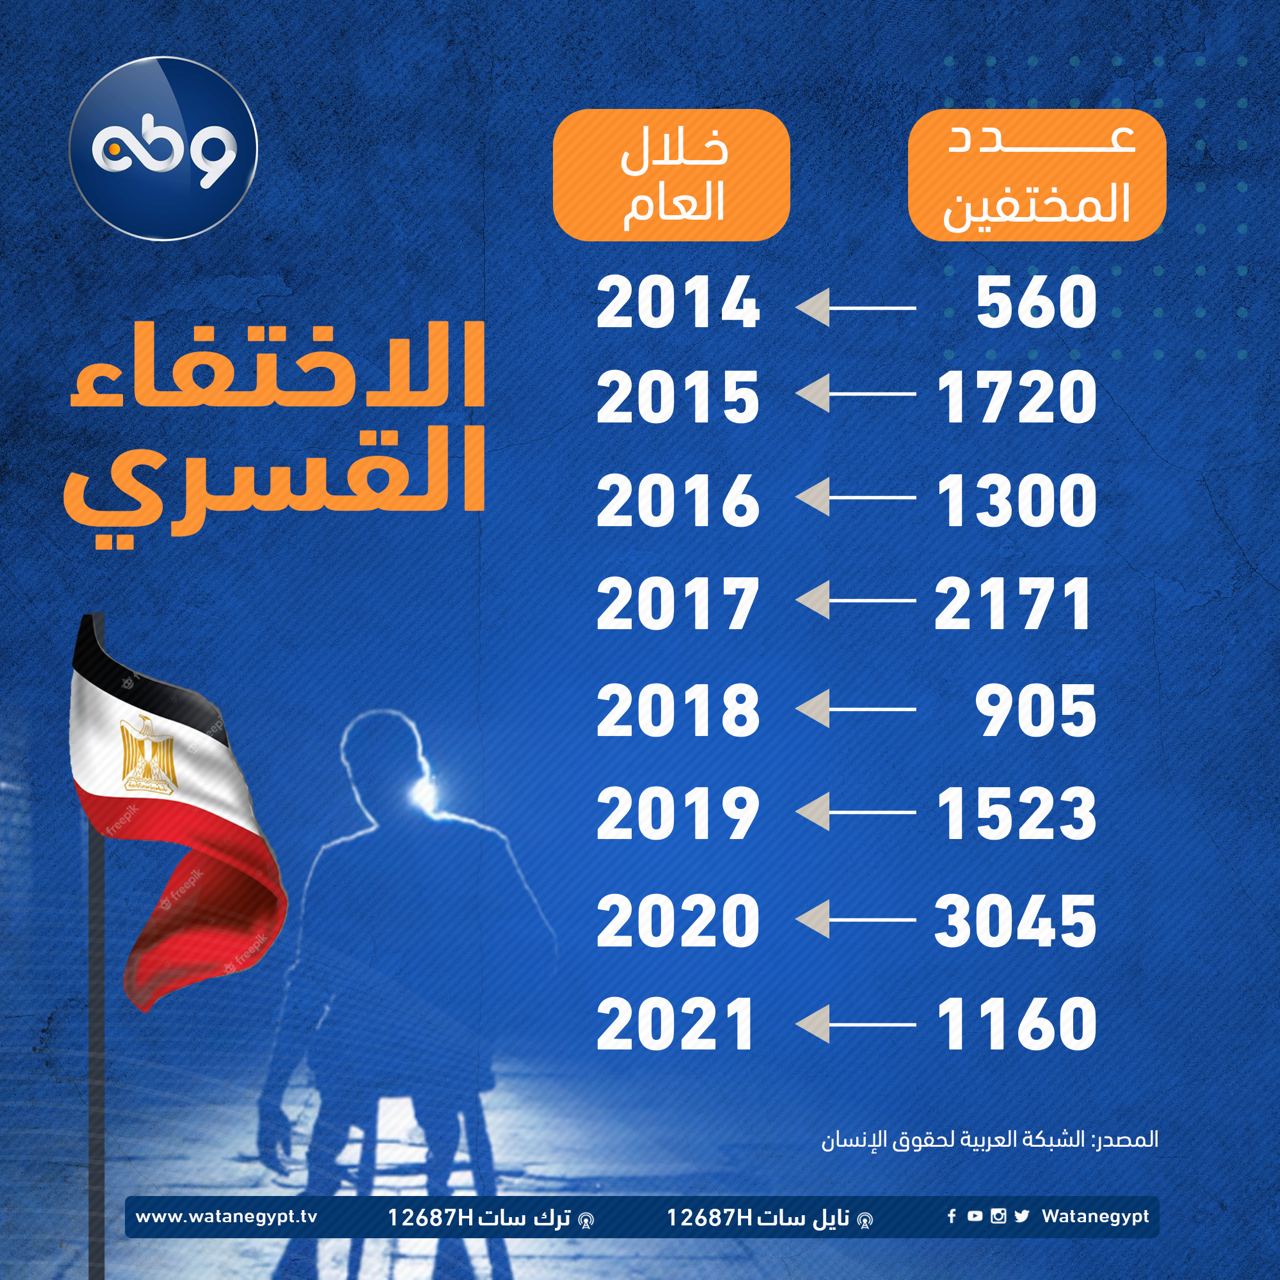 إحصائيات الاختفاء القسري منذ عام 2014 وحتي عام 2021. #الحرية_للمعتقلين #أنقذوهم